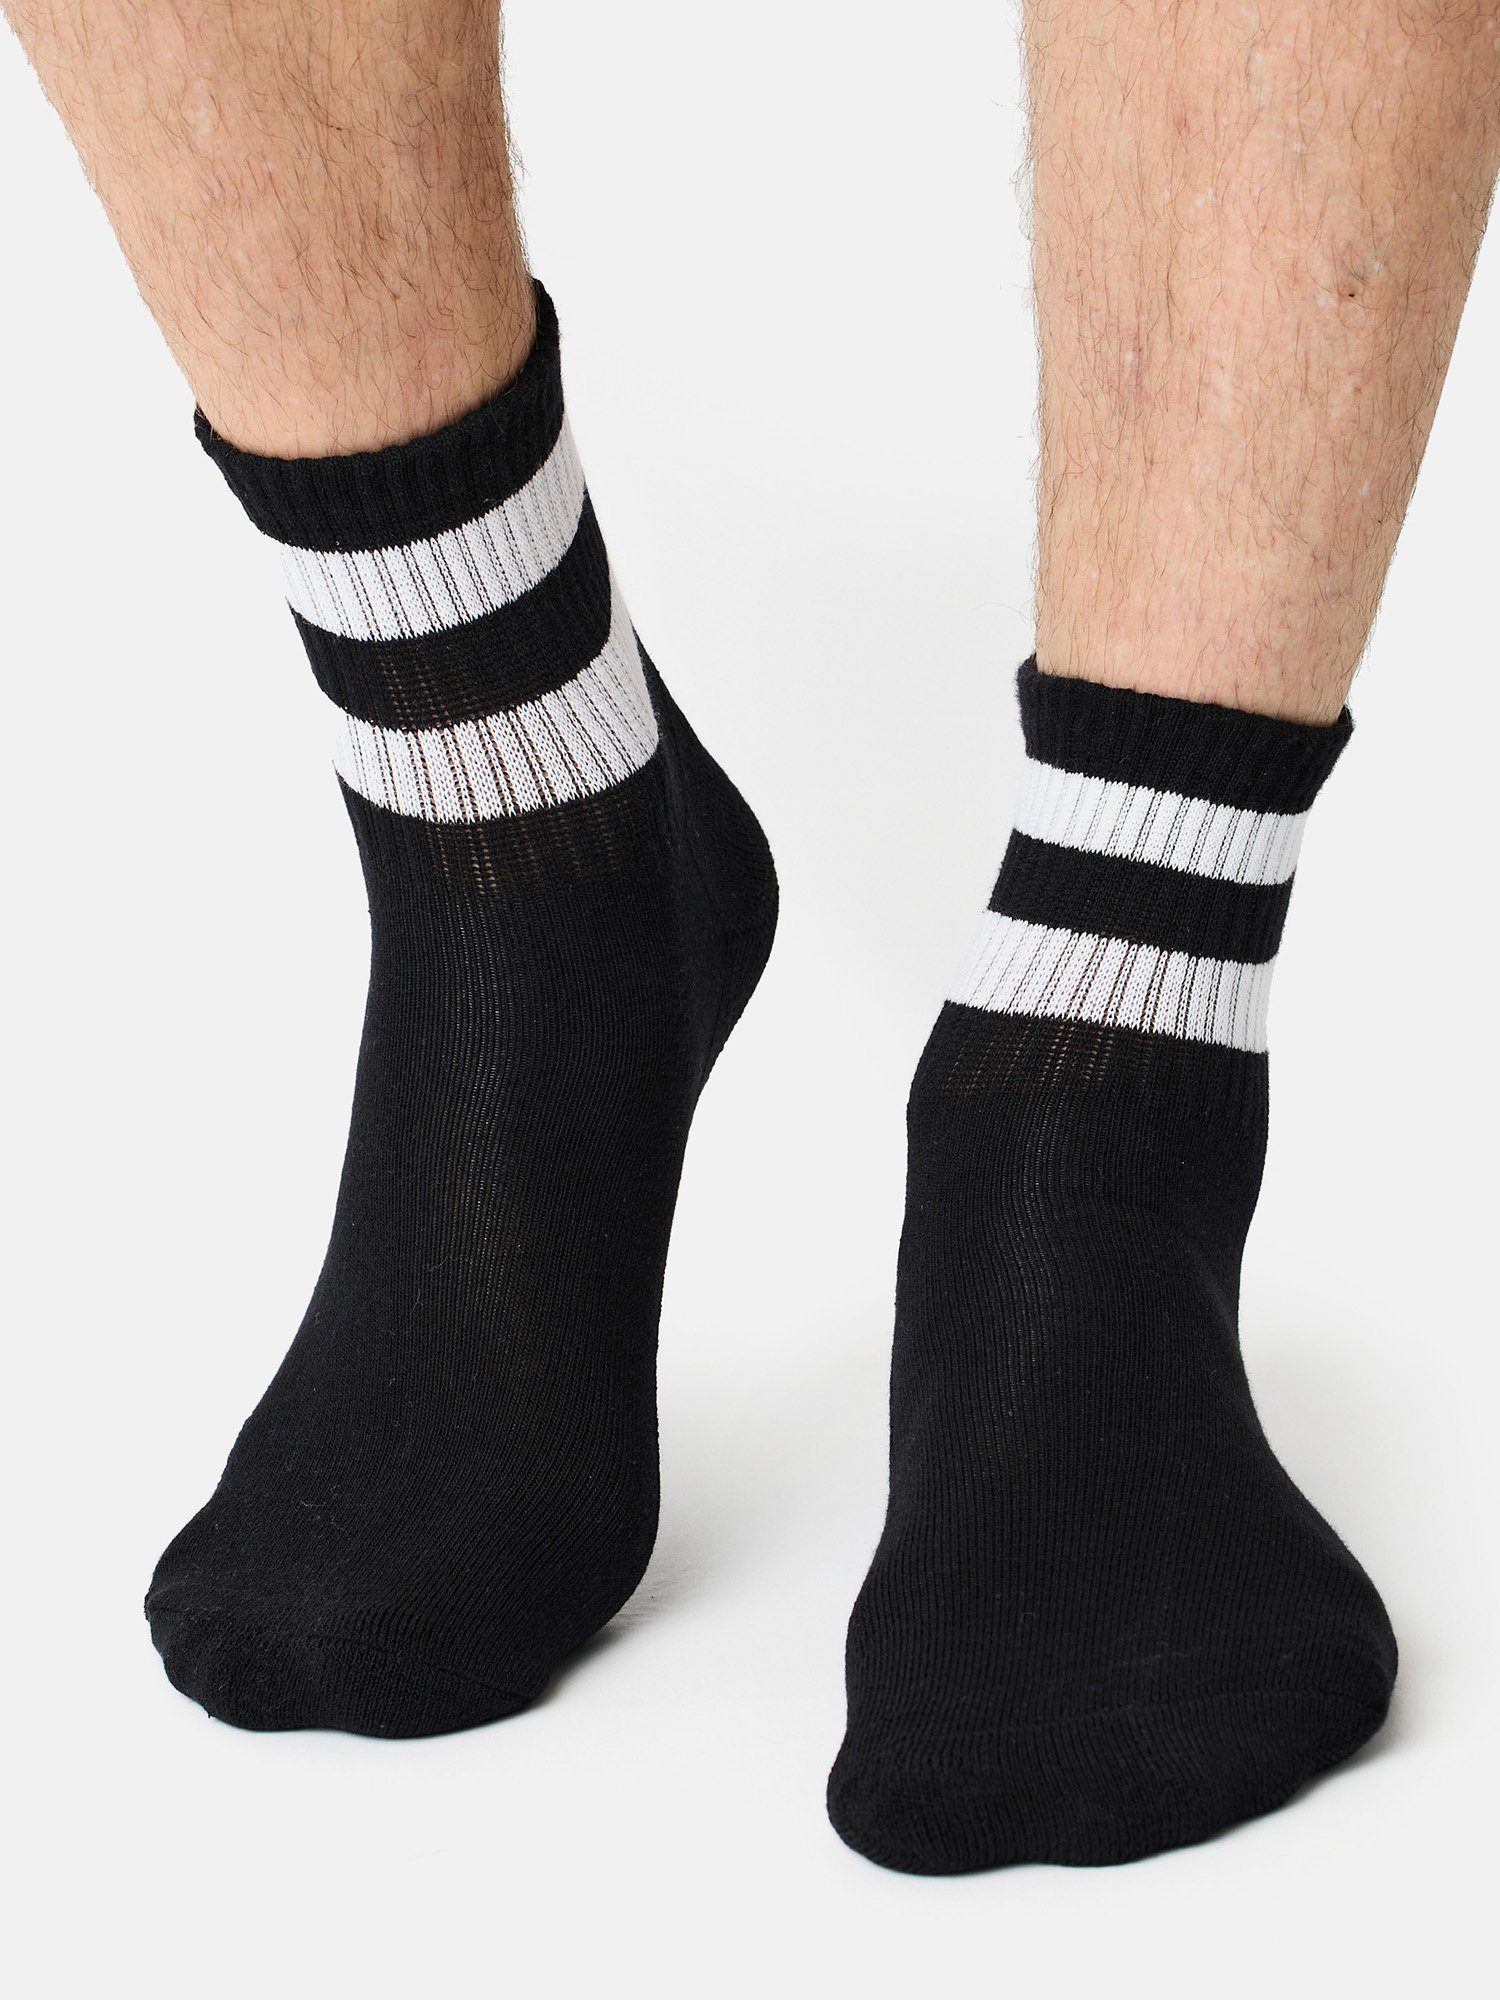 Sportsocken Freizeit Der Track Classic Tennis-Socken Short (15-Paar) schwarz/grau Nur